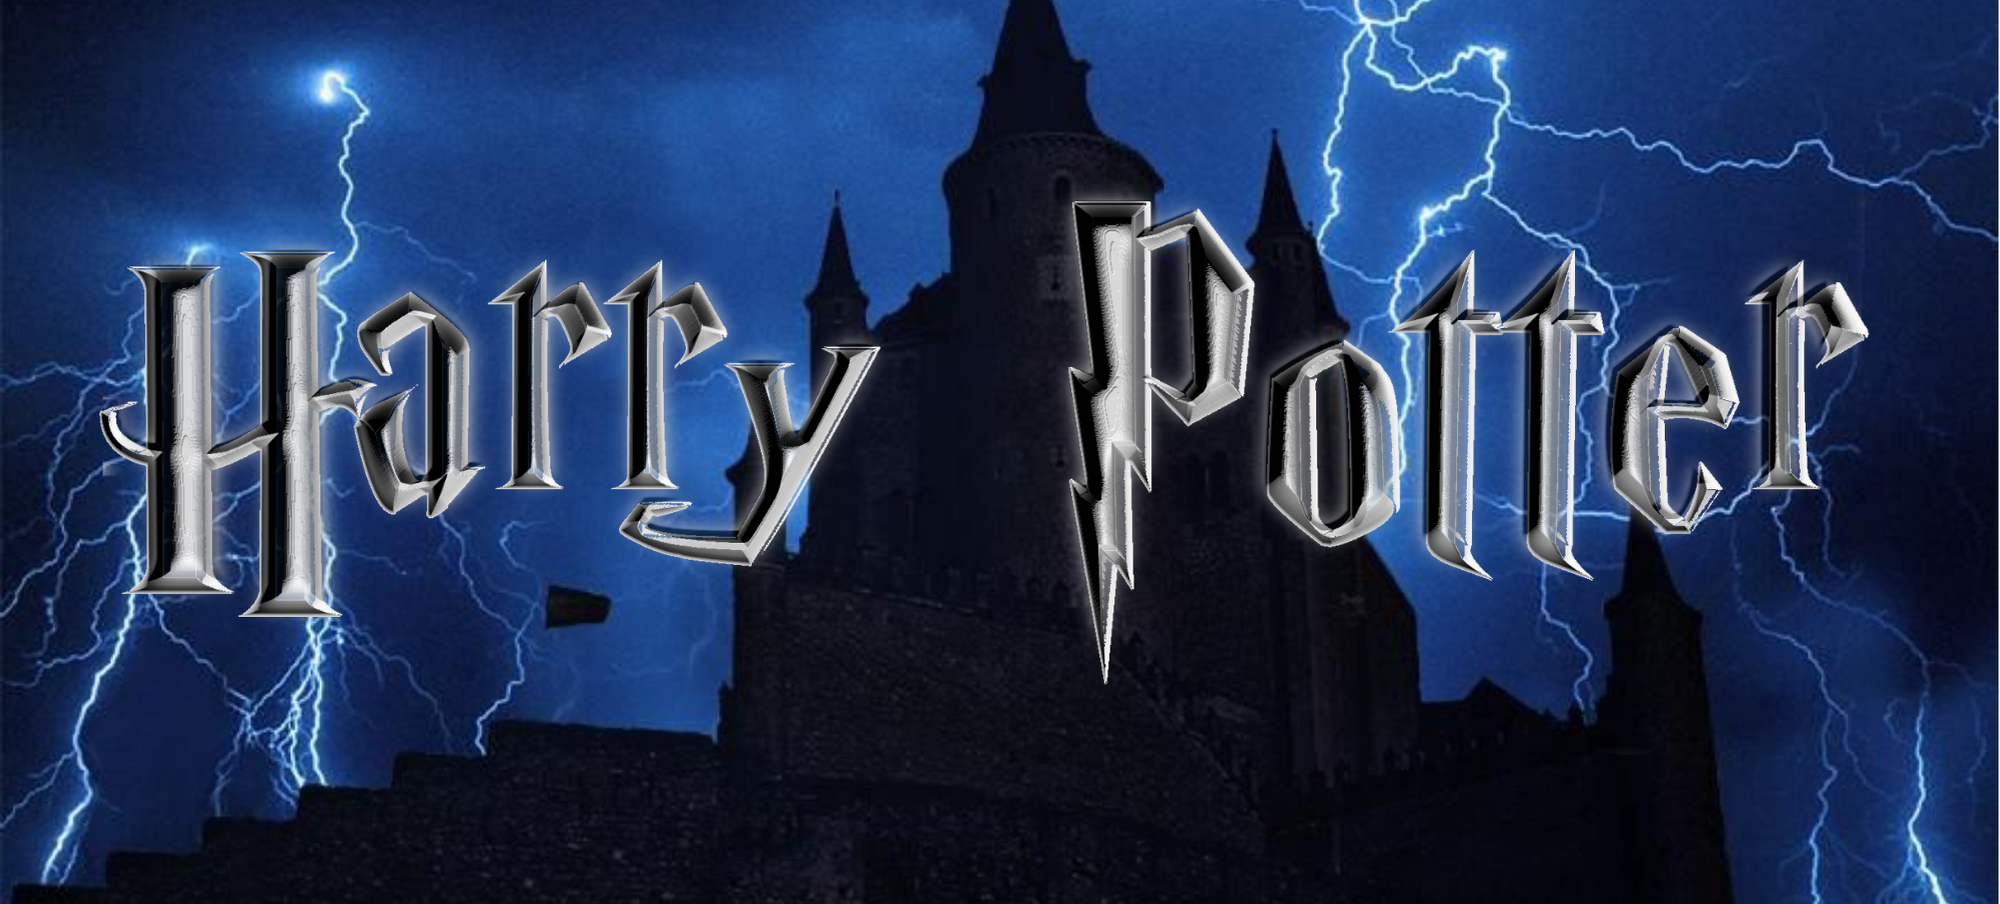 Harry potter Logo - Image 3.png